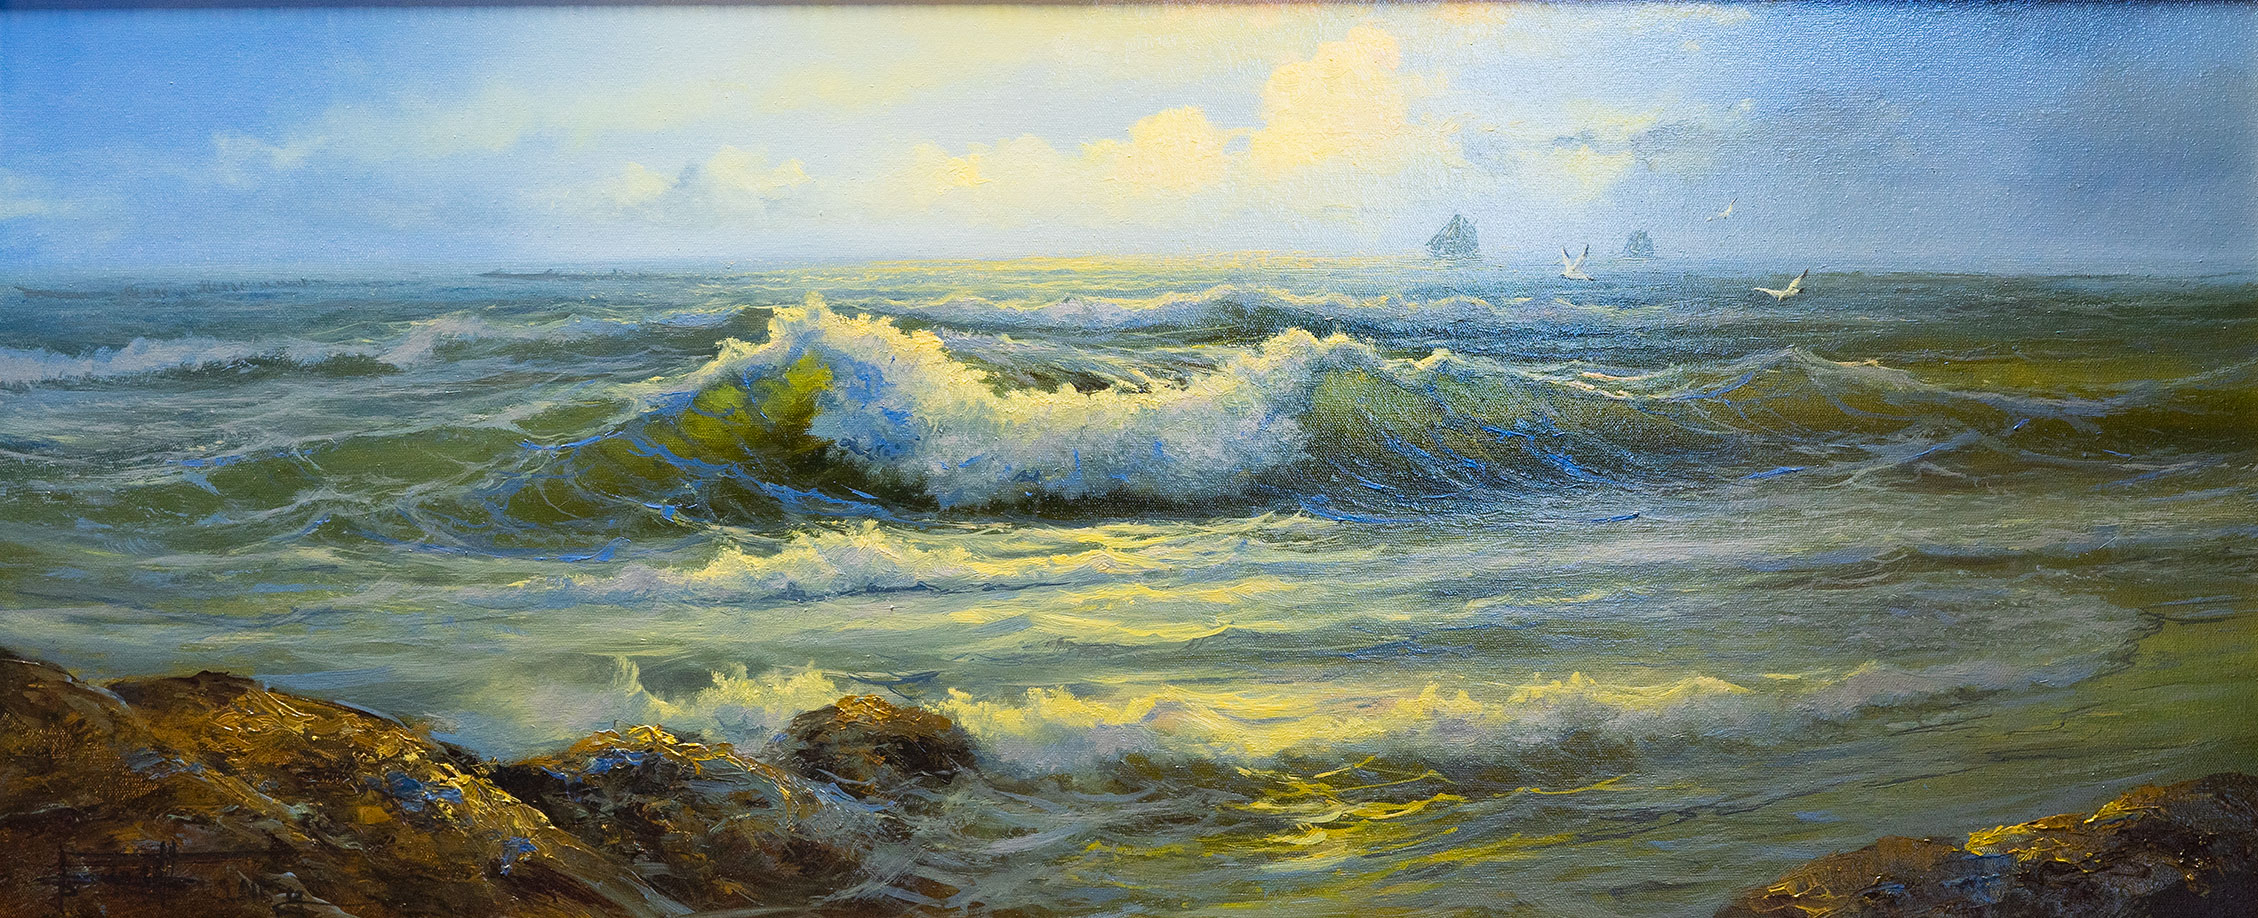 The Surf - 1, Dmitry Balakhonov, Buy the painting Oil